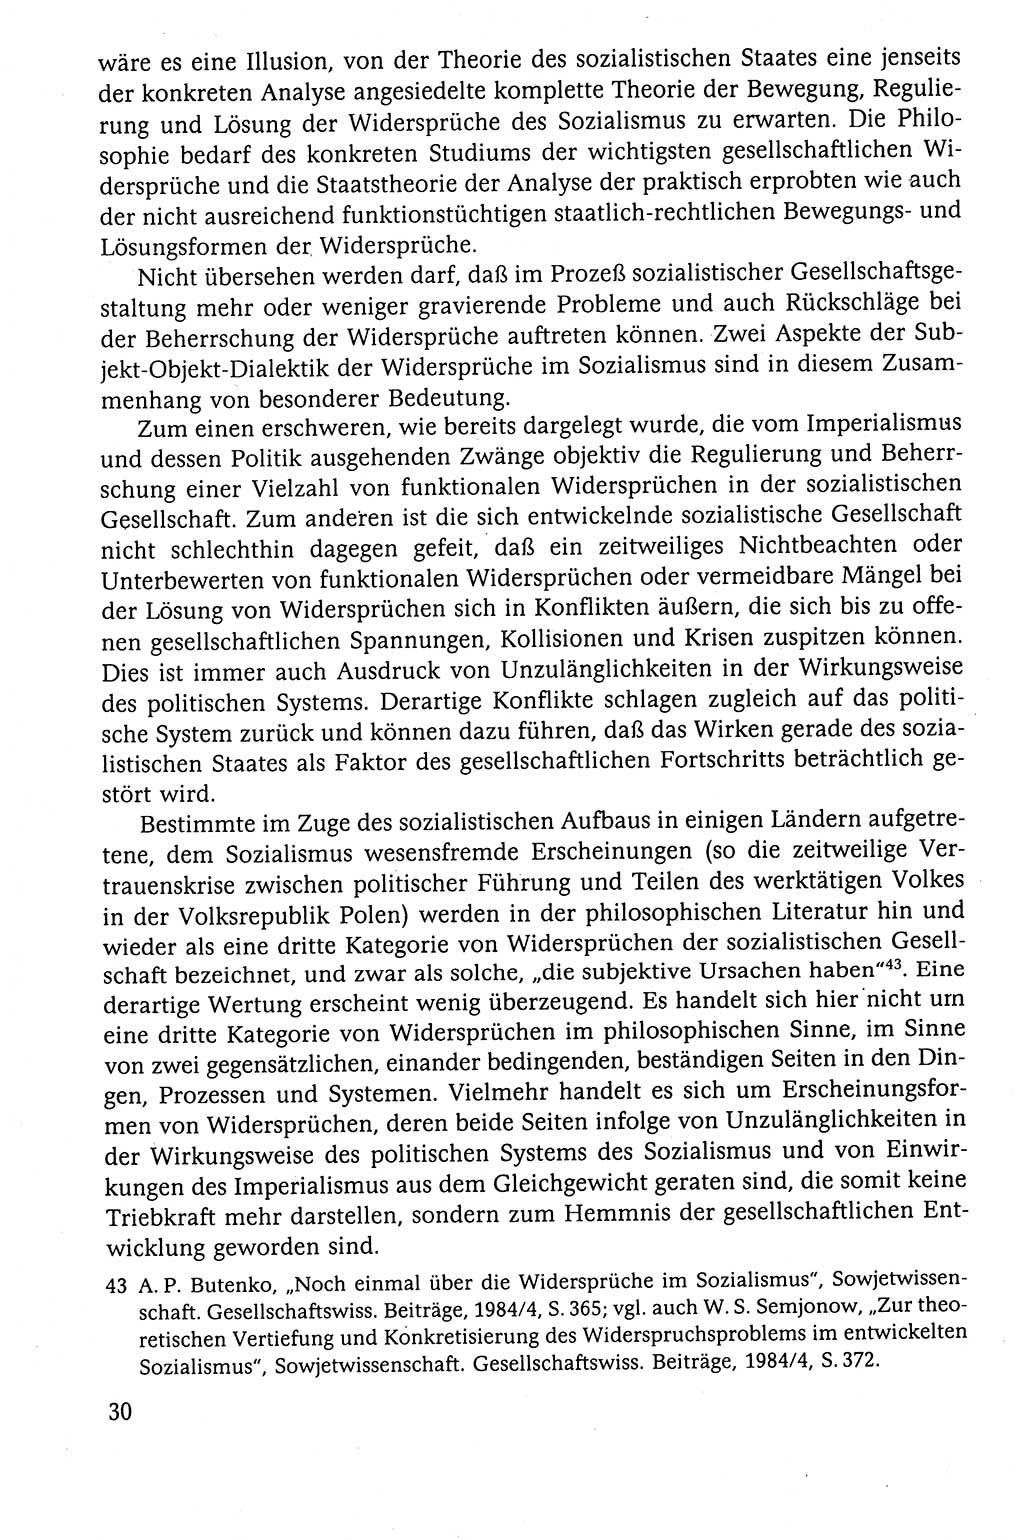 Der Staat im politischen System der DDR (Deutsche Demokratische Republik) 1986, Seite 30 (St. pol. Sys. DDR 1986, S. 30)